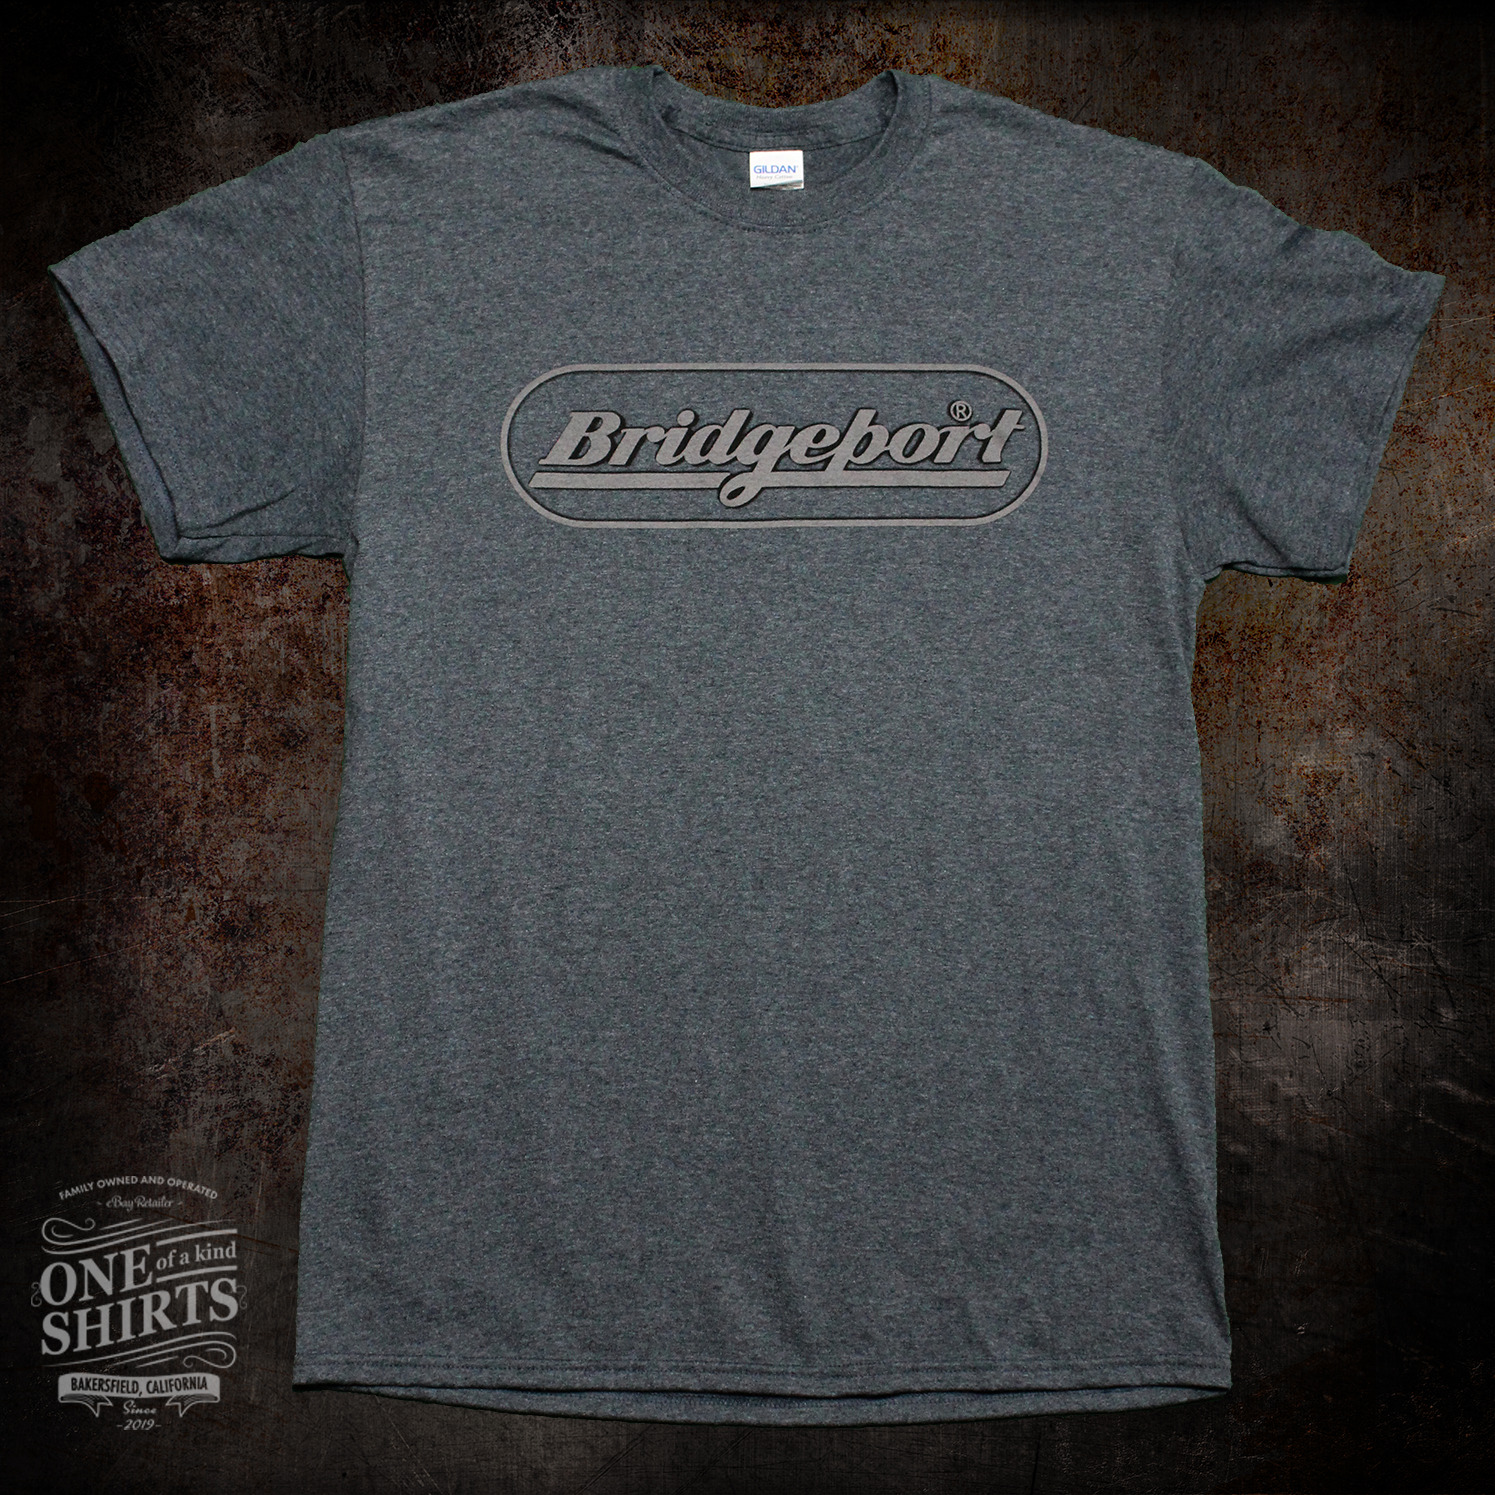 Bridgeport Milling Machine Grey Logo T Shirt (rare vintage logo) Grey 